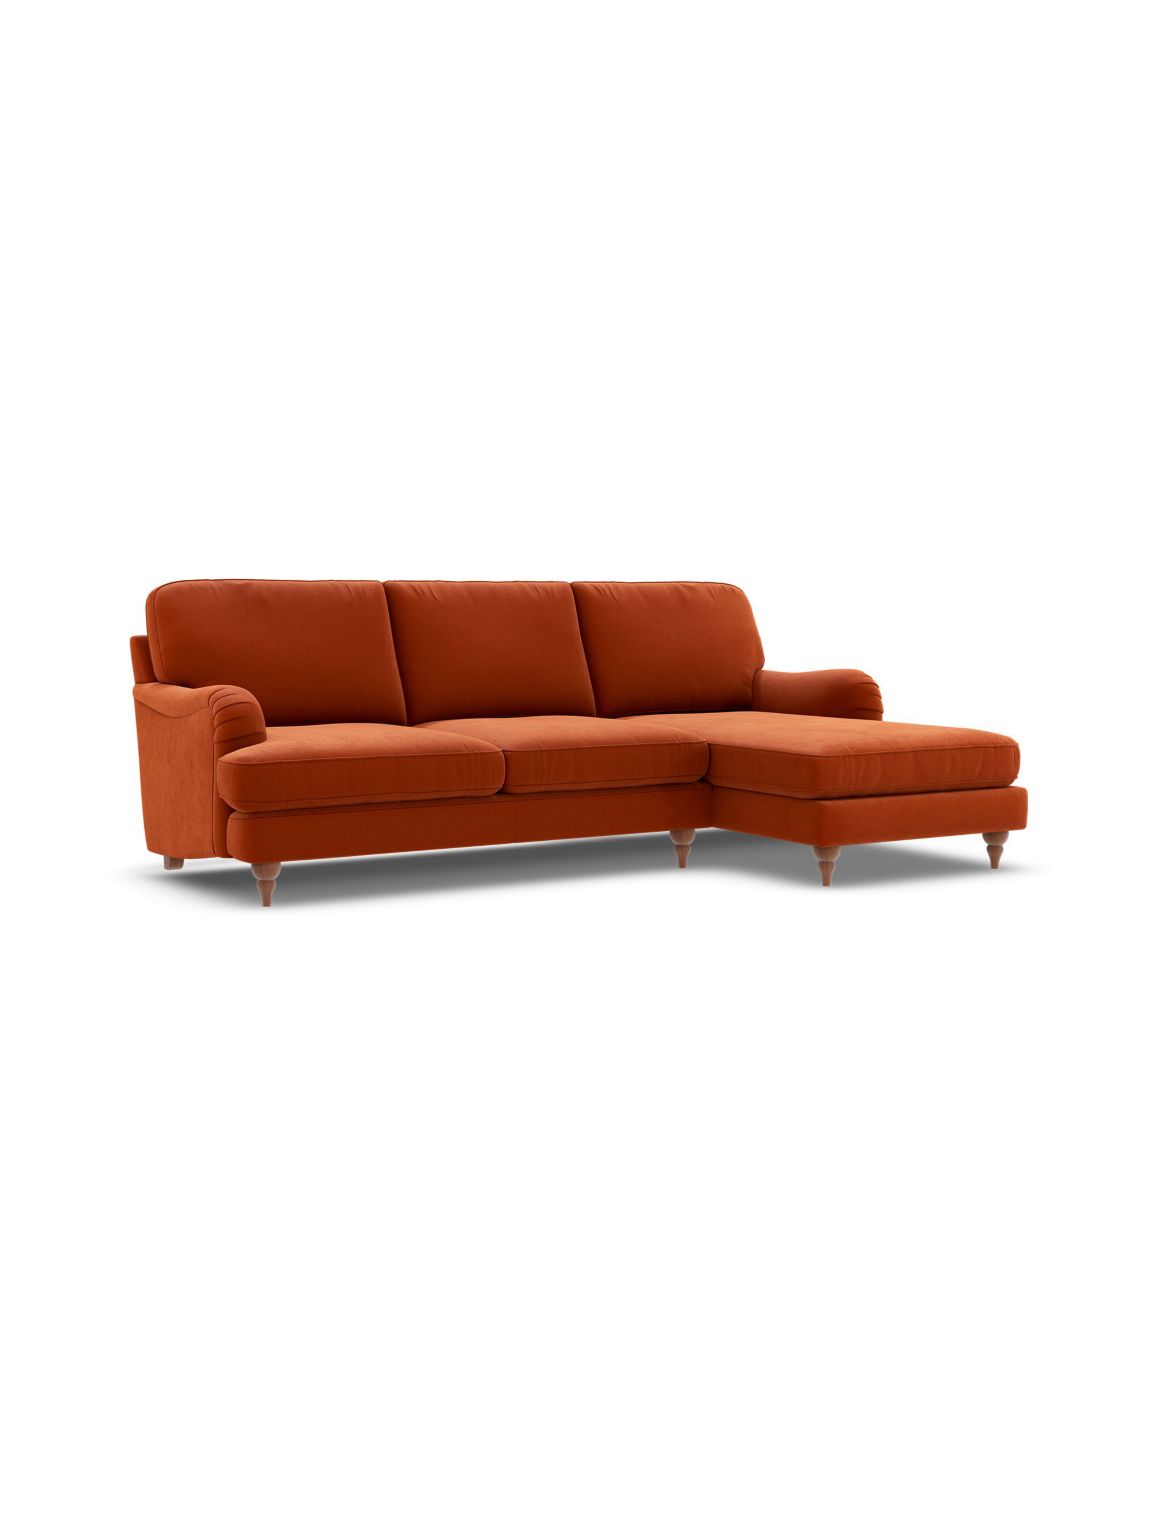 Rochester Corner Chaise Sofa (Right-Hand) orange